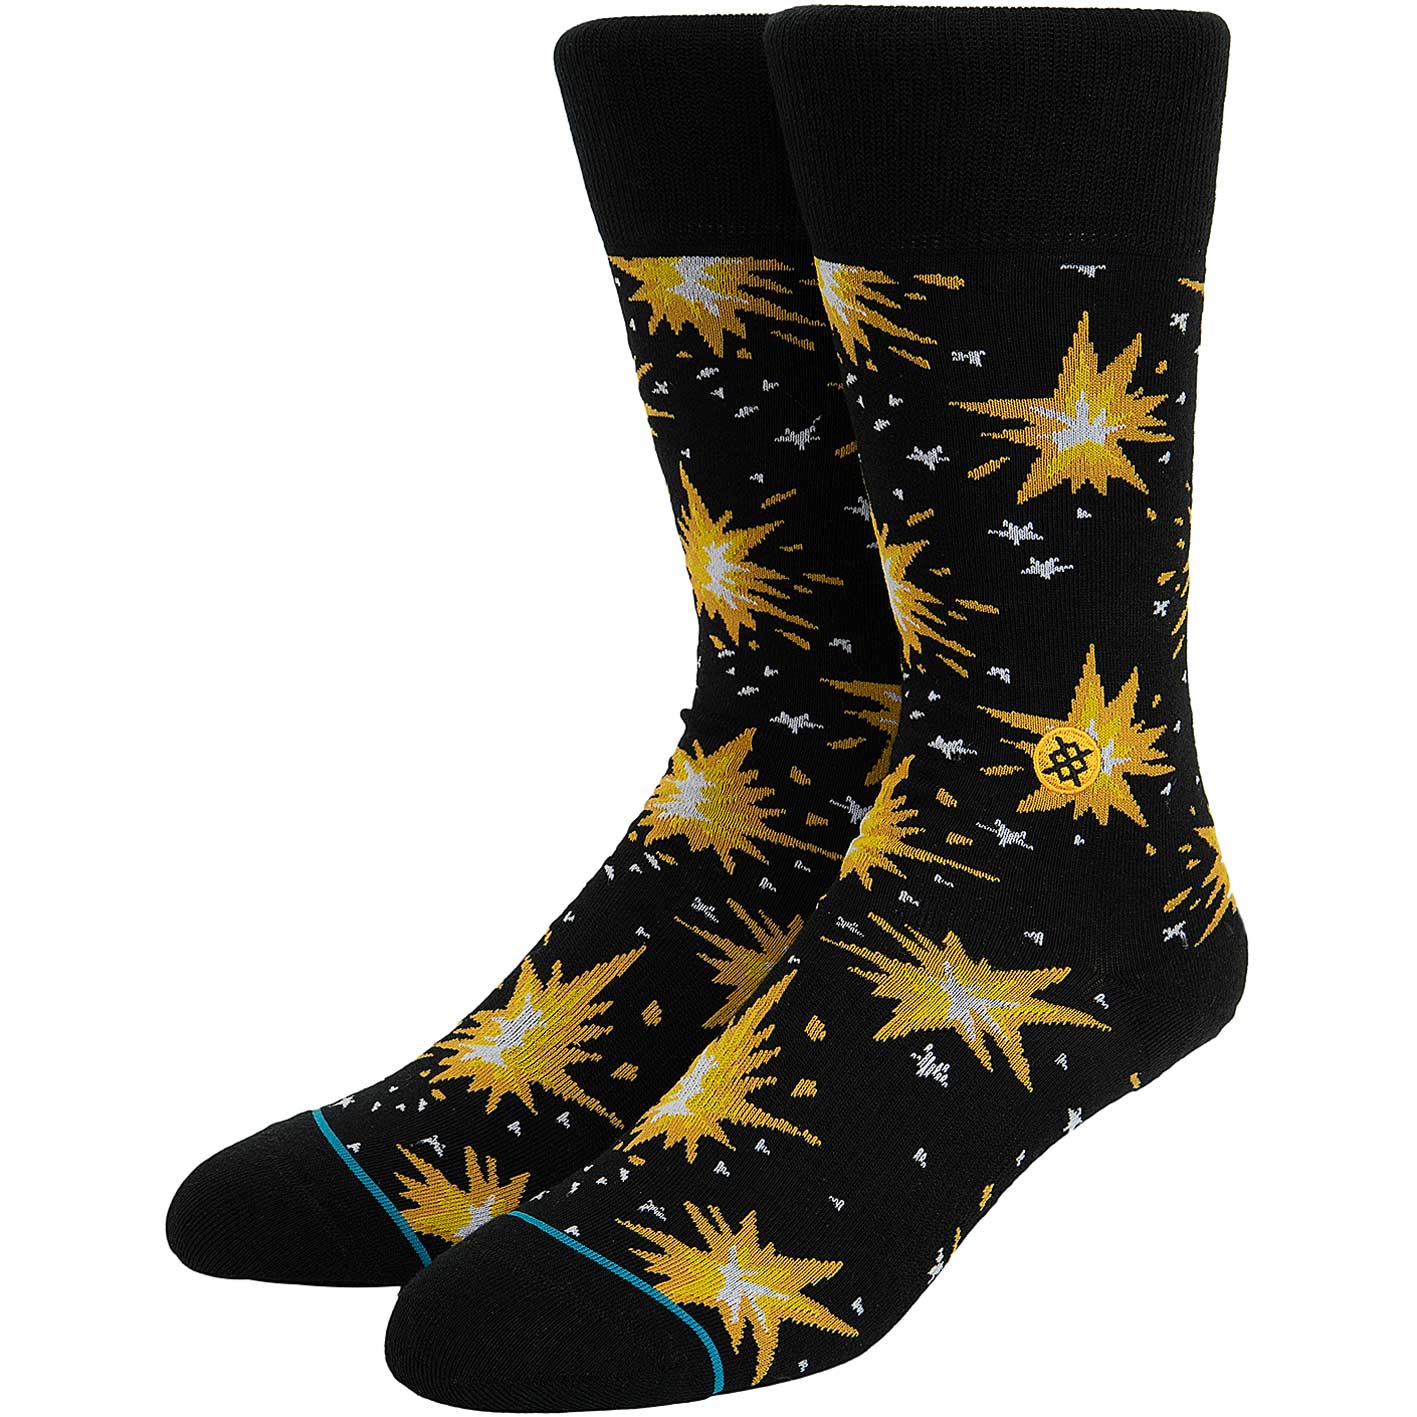 ☆ Stance Socken Firecracker schwarz/gelb - hier bestellen!